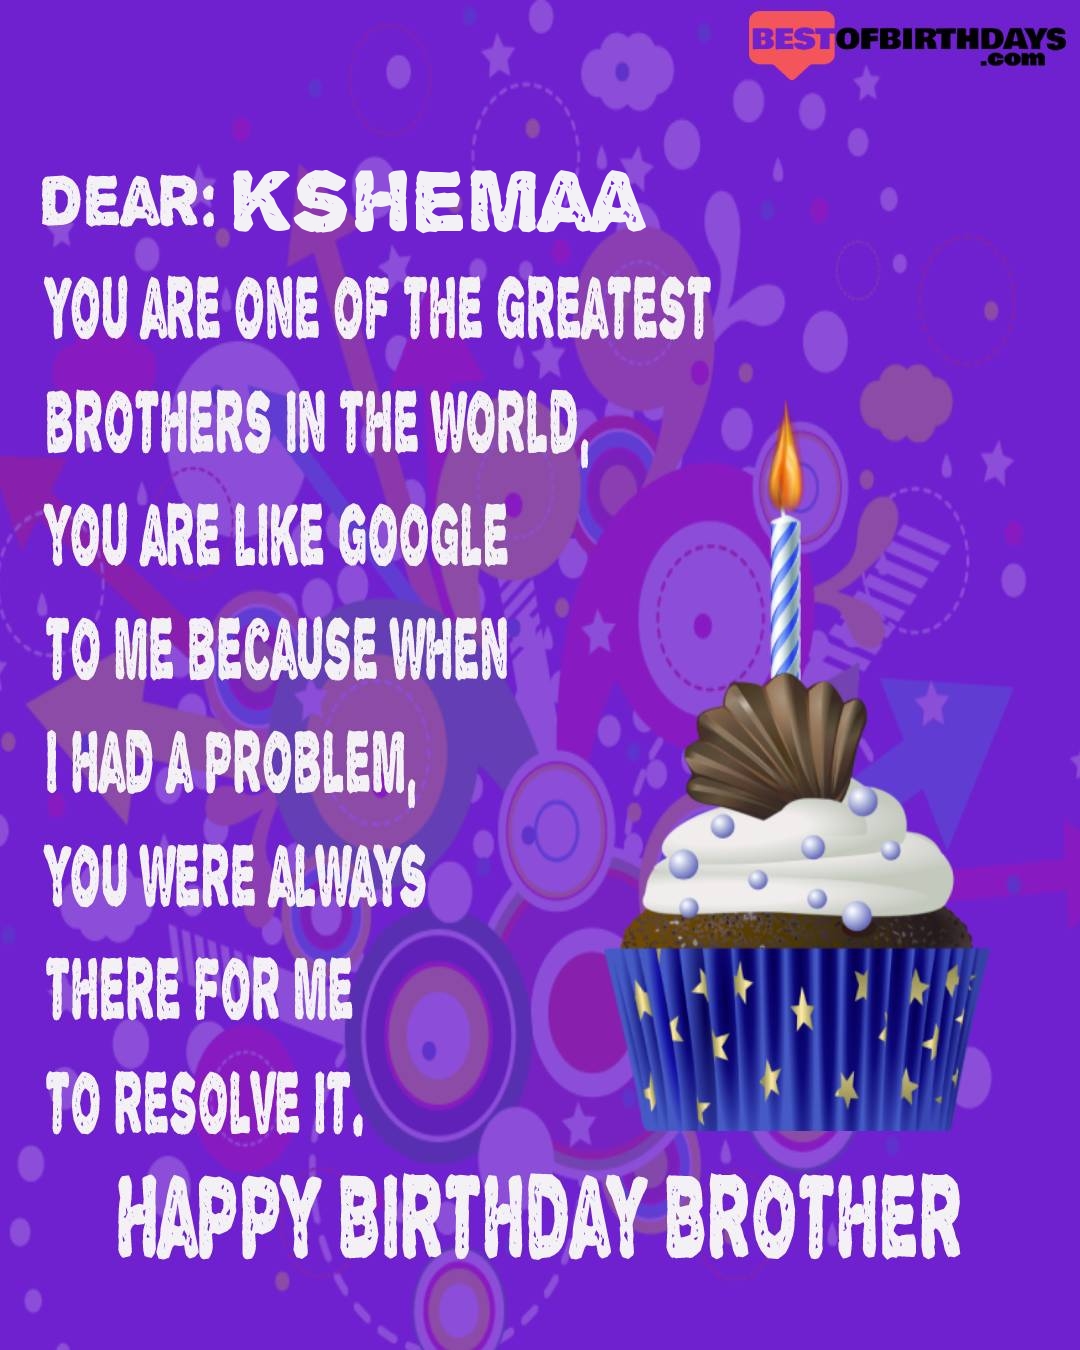 Happy birthday kshemaa bhai brother bro